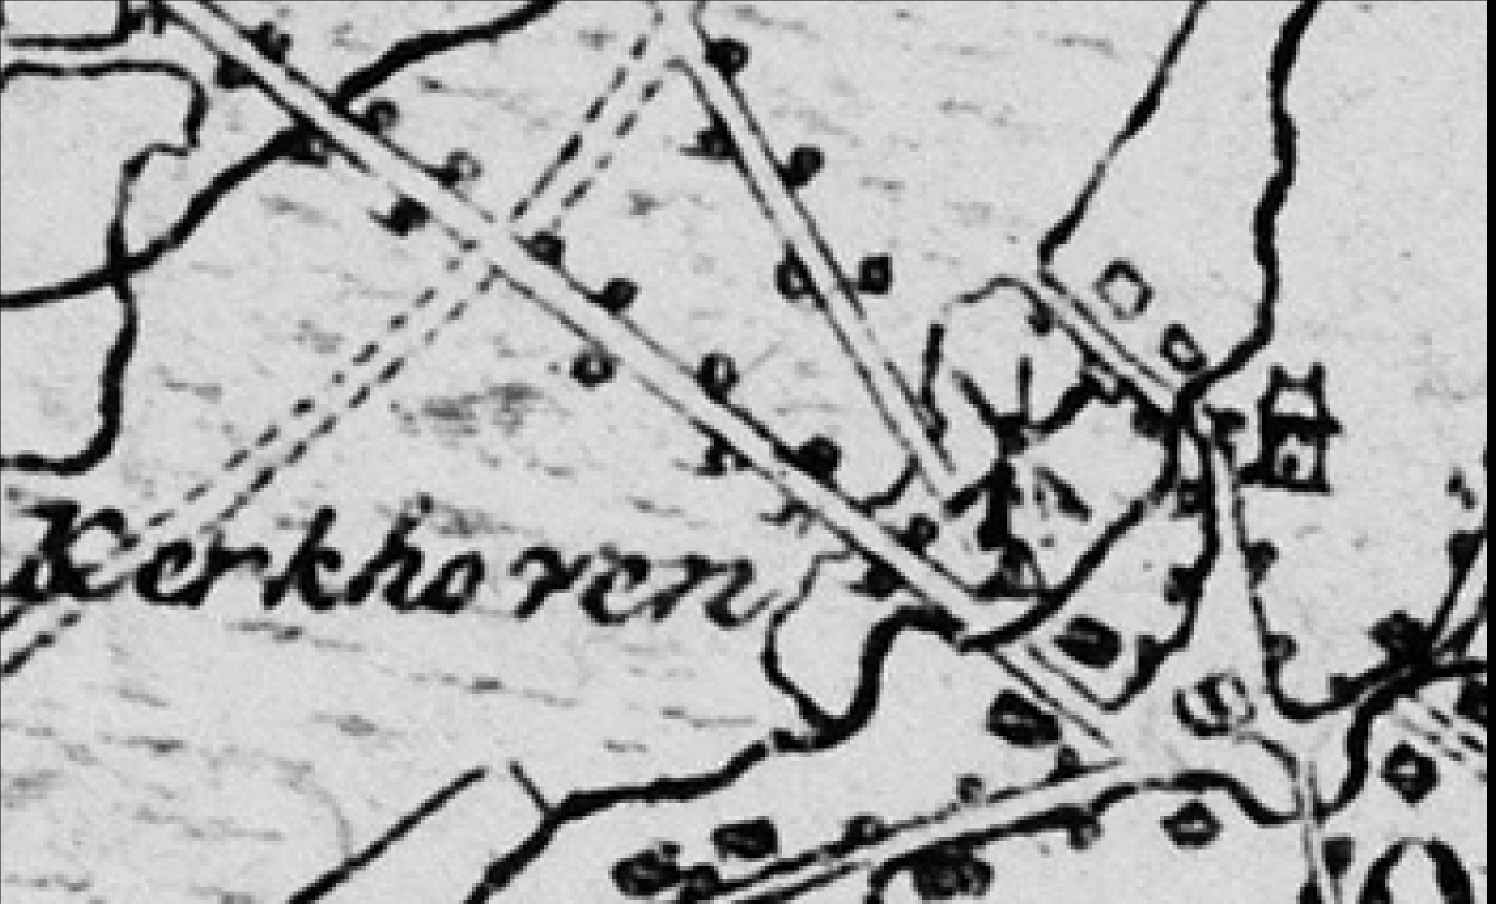 Roij, die nu aan diens drie kinderen toekomt. Toezienders daarbij zijn Lambert Anthonis van Roij en Peeter Roosen. [11] Van Eijck was vorster van Oisterwijk en borgemeester over het jaar 1677.